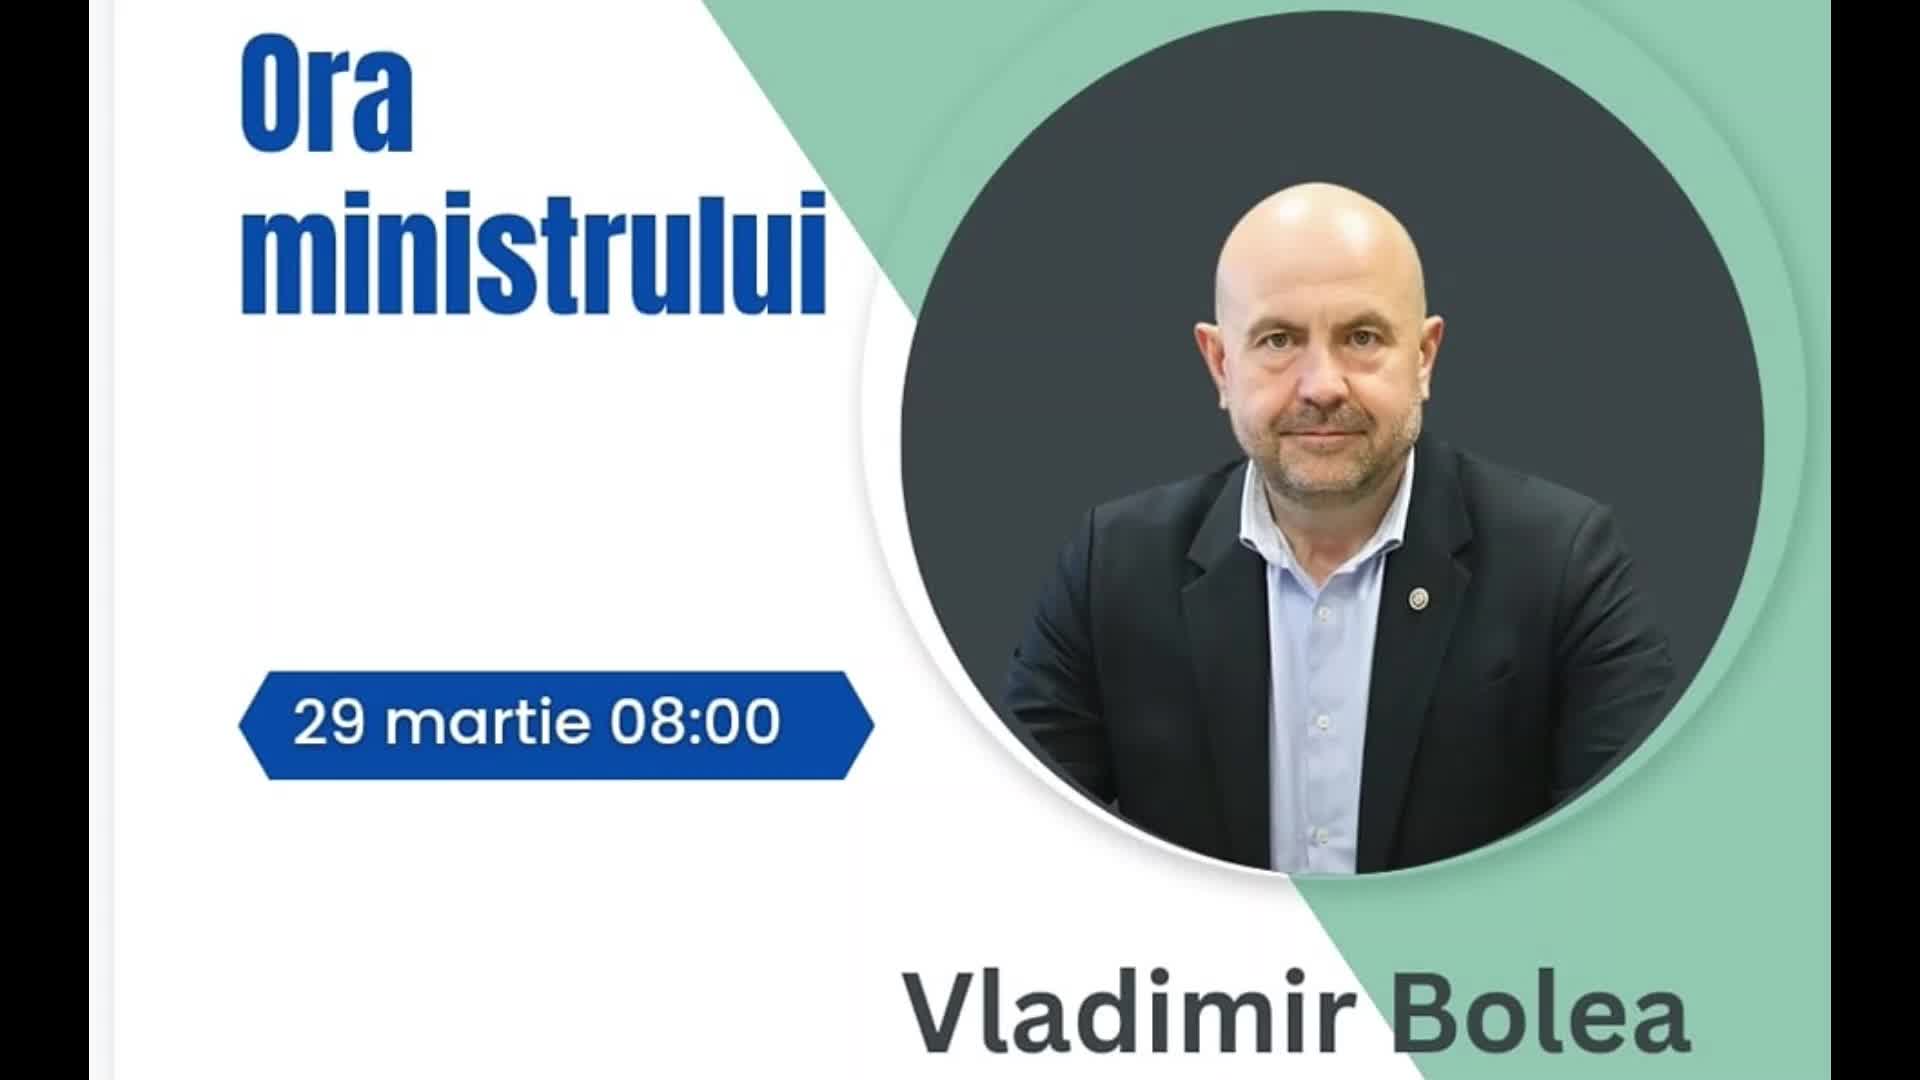 Ora ministrului: Vladimir Bolea în dialog online cu șefii Direcțiilor/Serviciilor/Secțiilor Agricole Raionale, despre campania lucrărilor agricole de primăvară